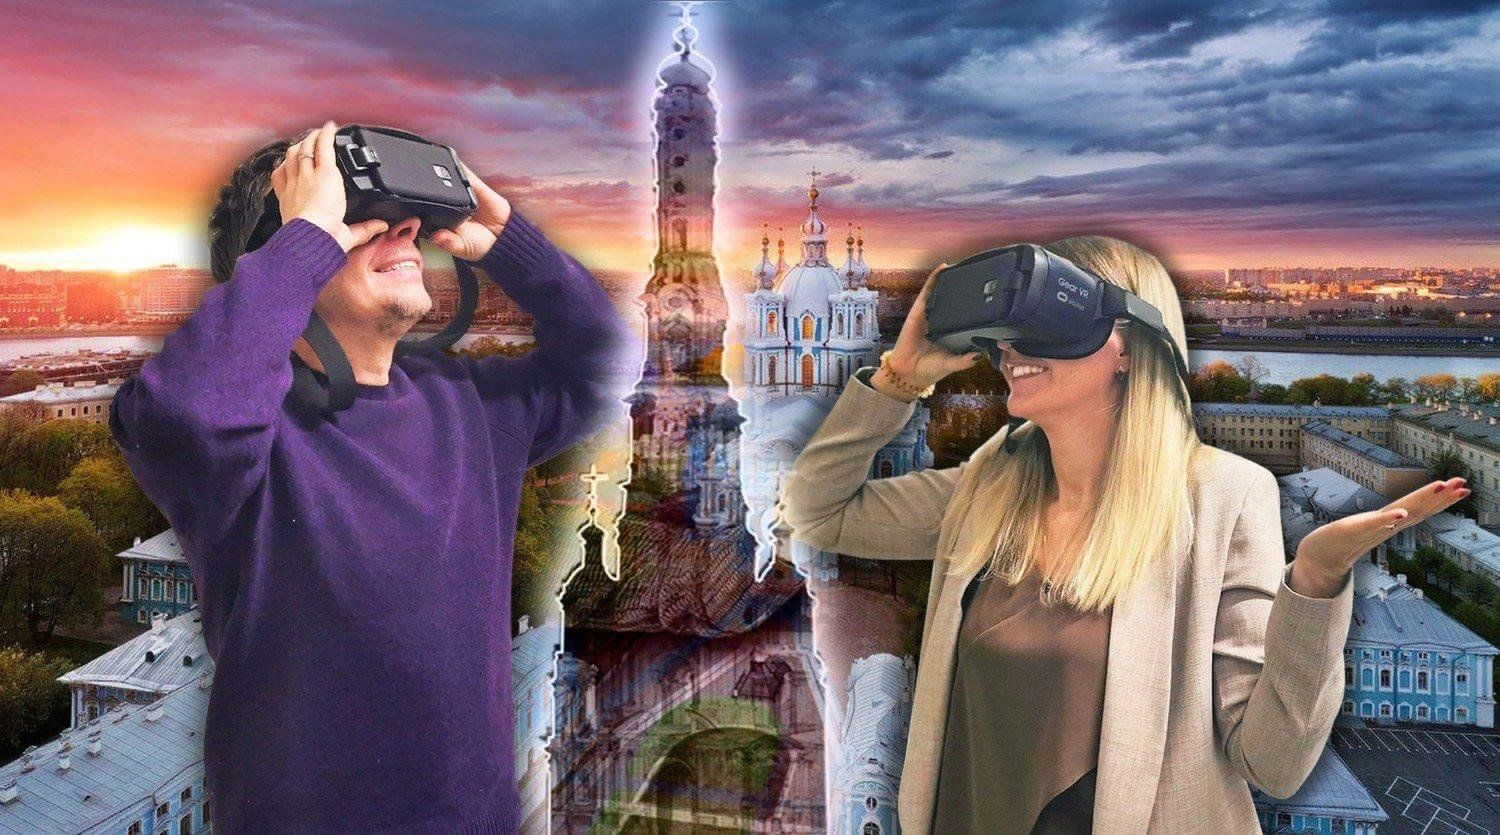 Использование виртуальных экскурсий. Экскурсия в виртуальной реальности. VR реальность на экскурсии. Обзорная экскурсия по виртуальной реальности. Экскурсия в VR очках.